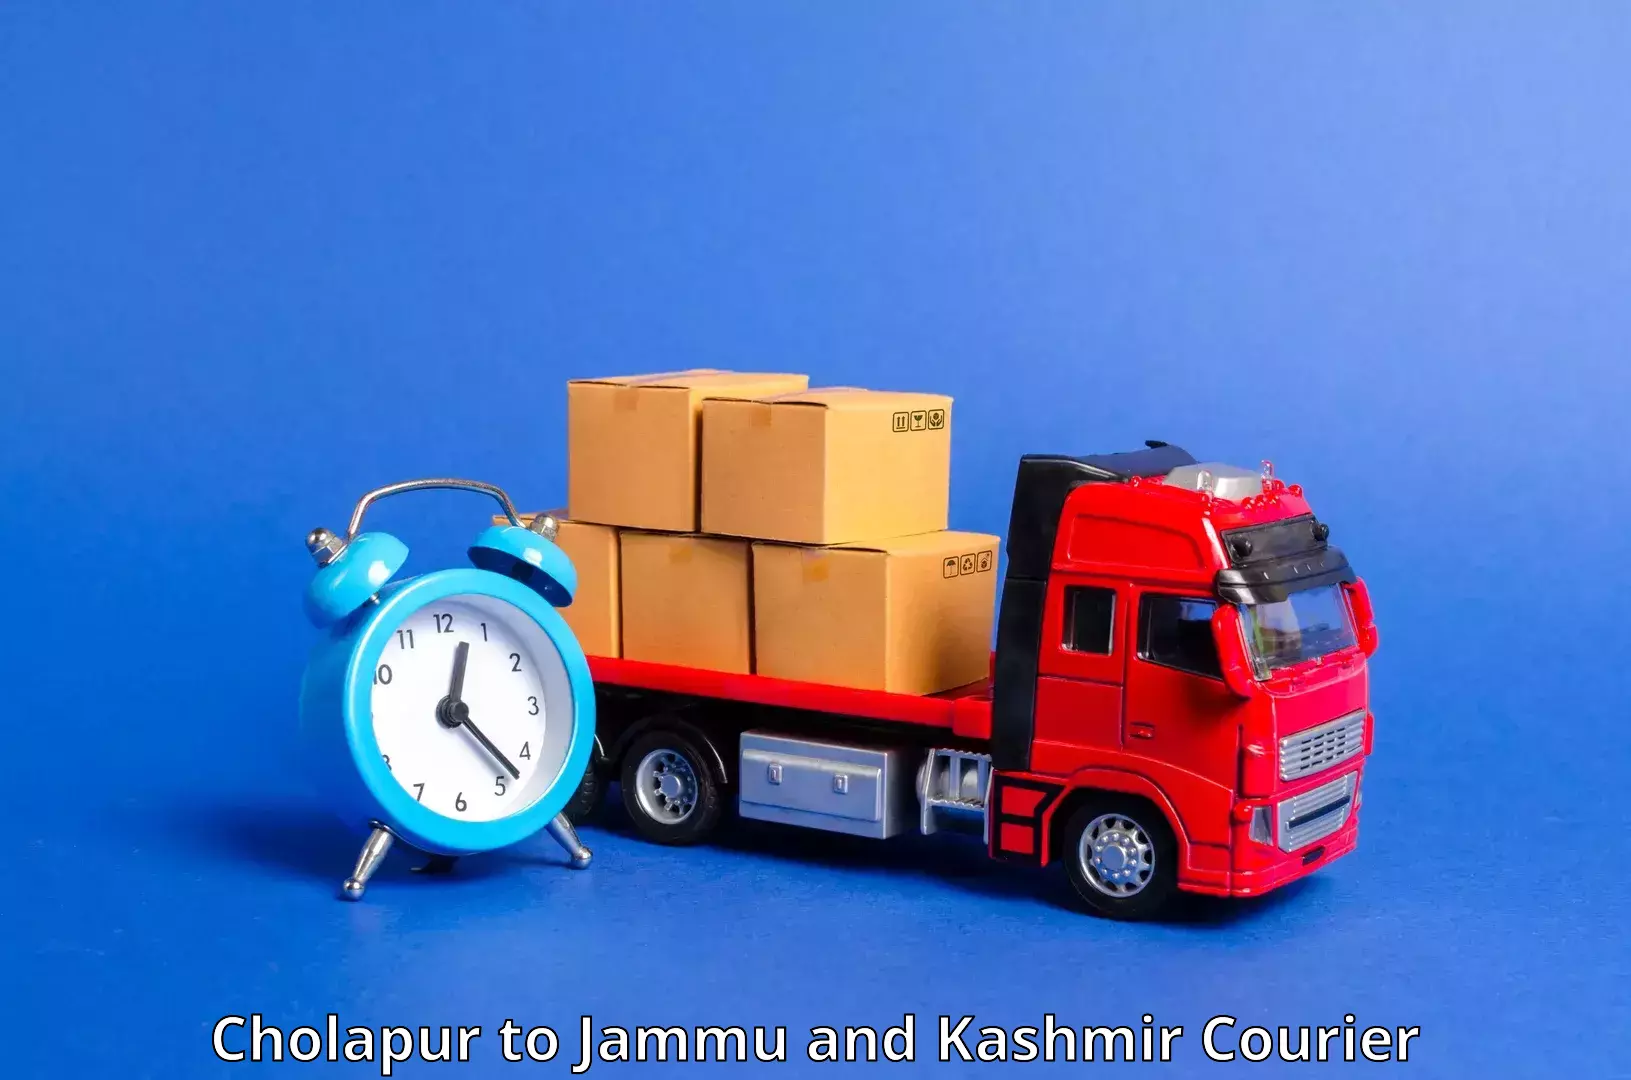 Cross-border shipping Cholapur to Srinagar Kashmir